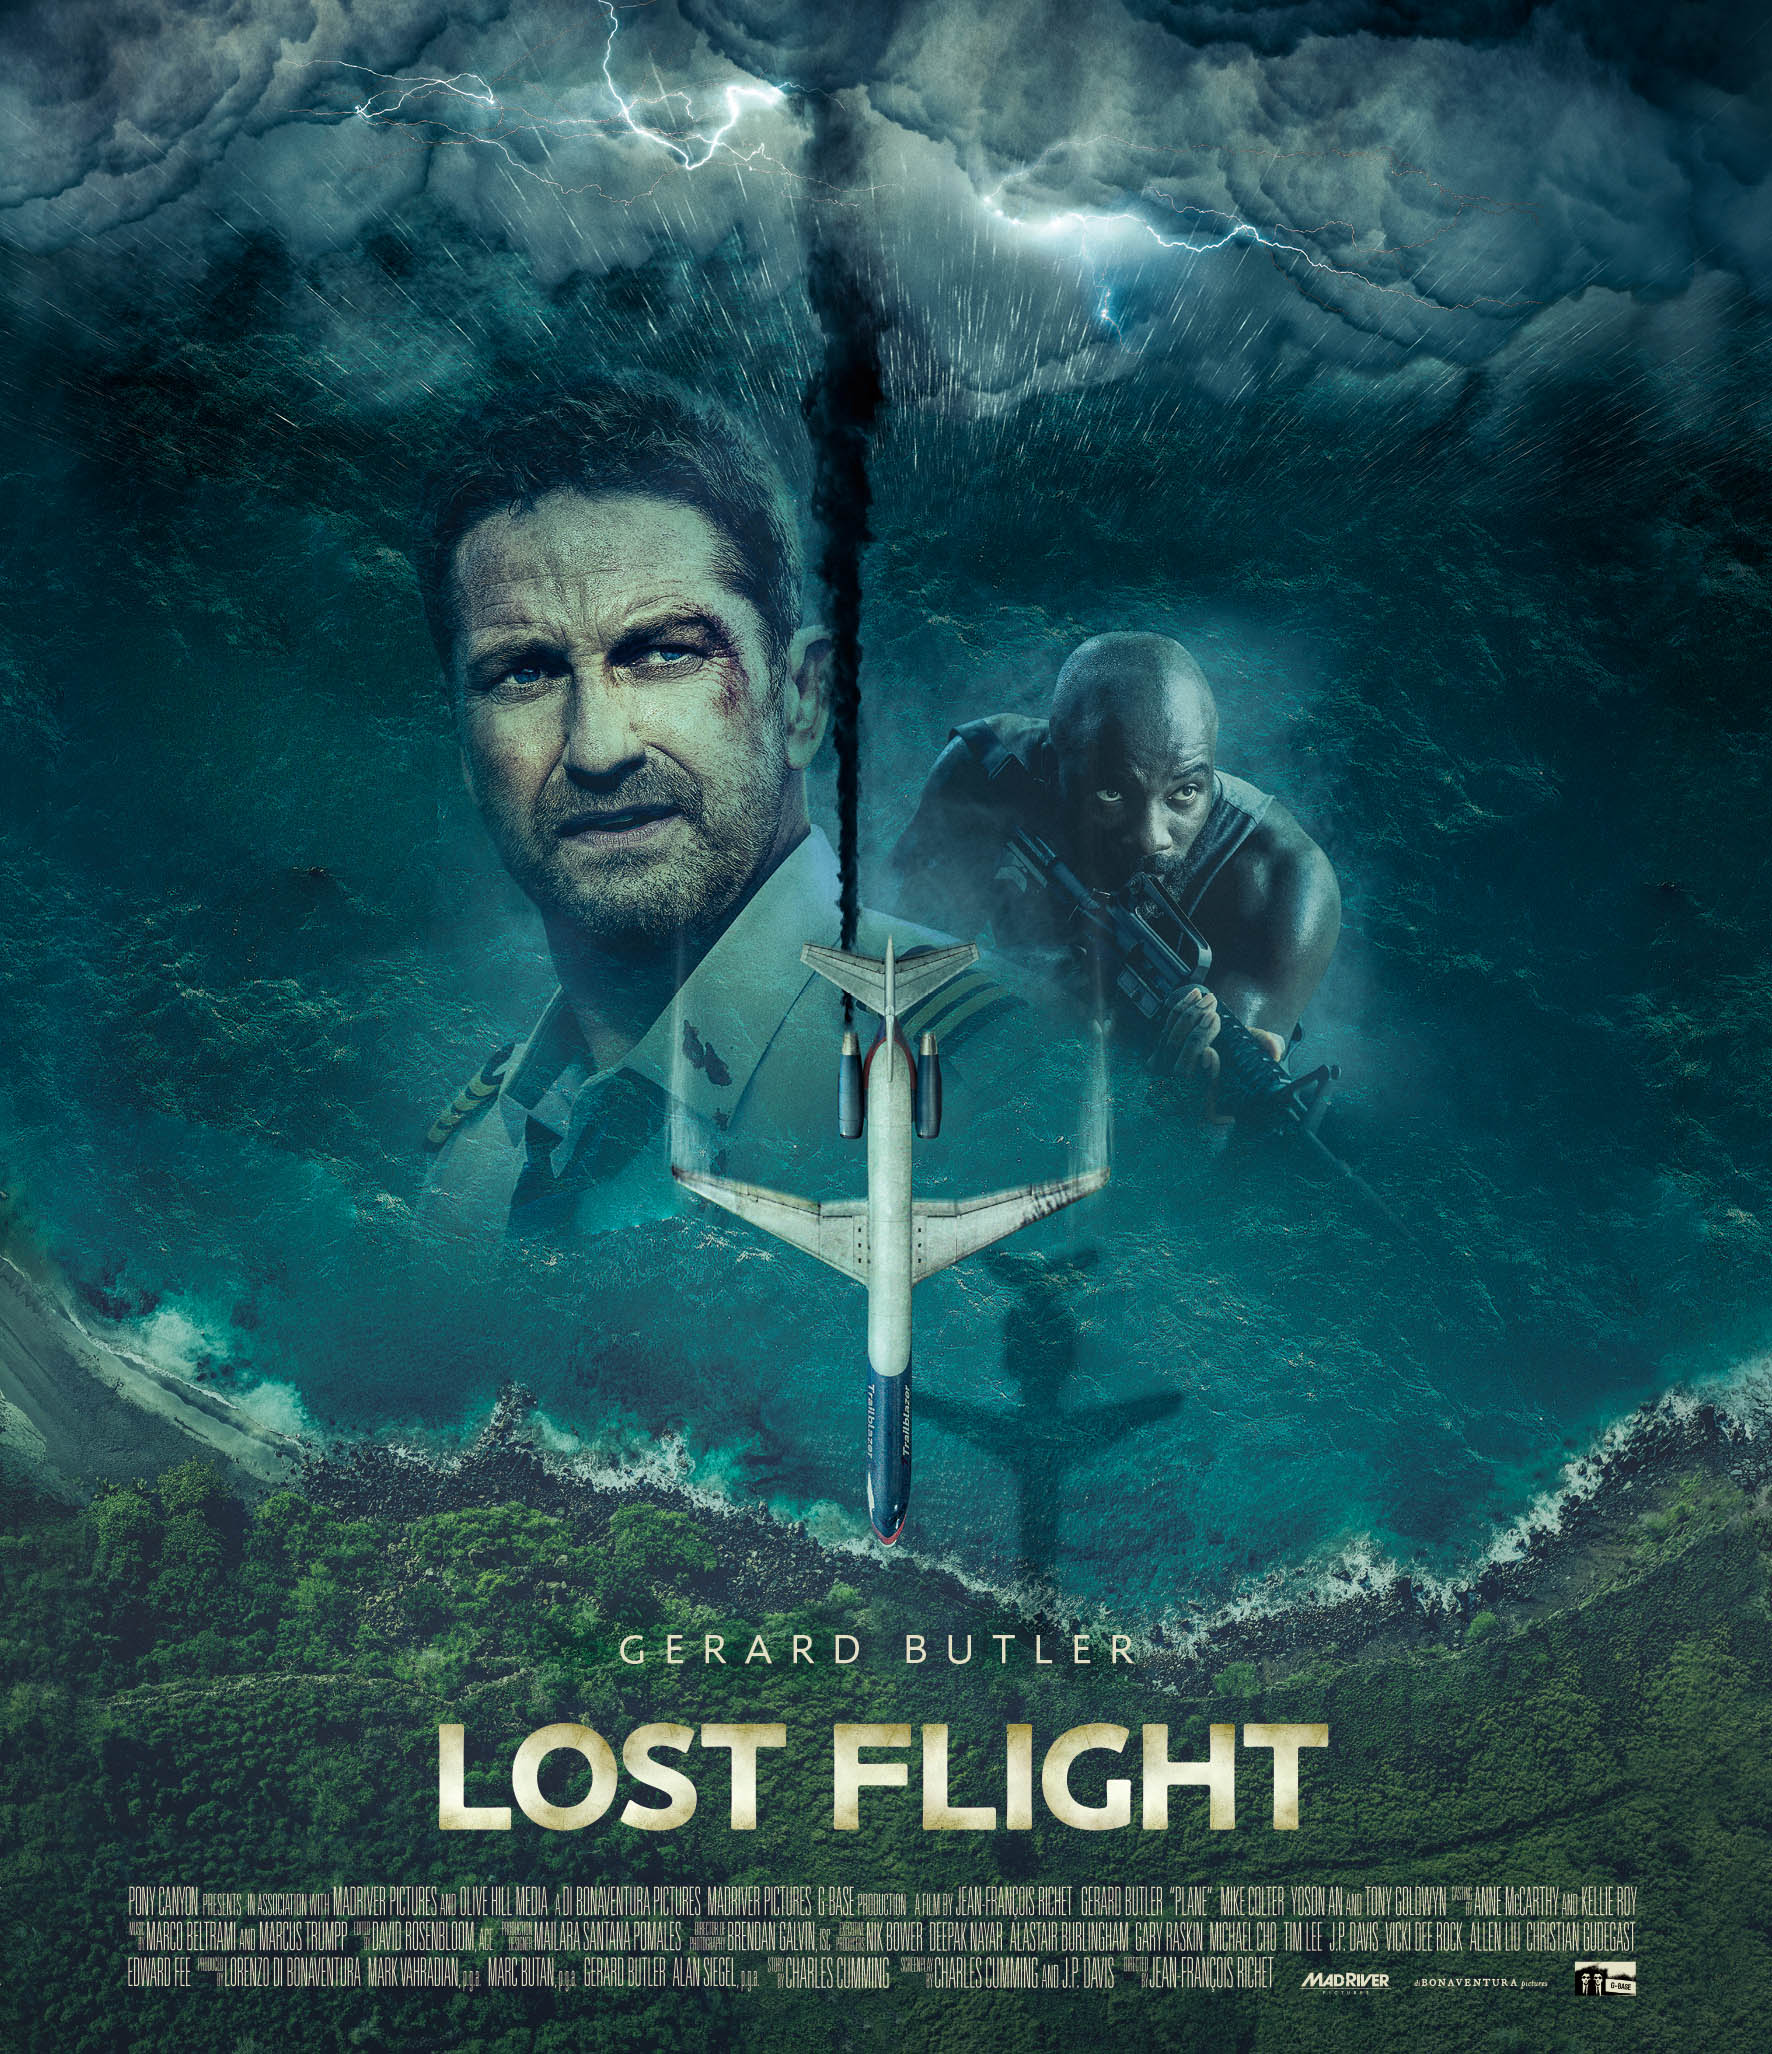 4万フィートの上空から、世界最悪の島へー!ジェラルド・バトラー主演《航空パニック×脱出サバイバル》ムービー『ロスト・フライト』が配信・Blu-ray&DVDリリース決定!